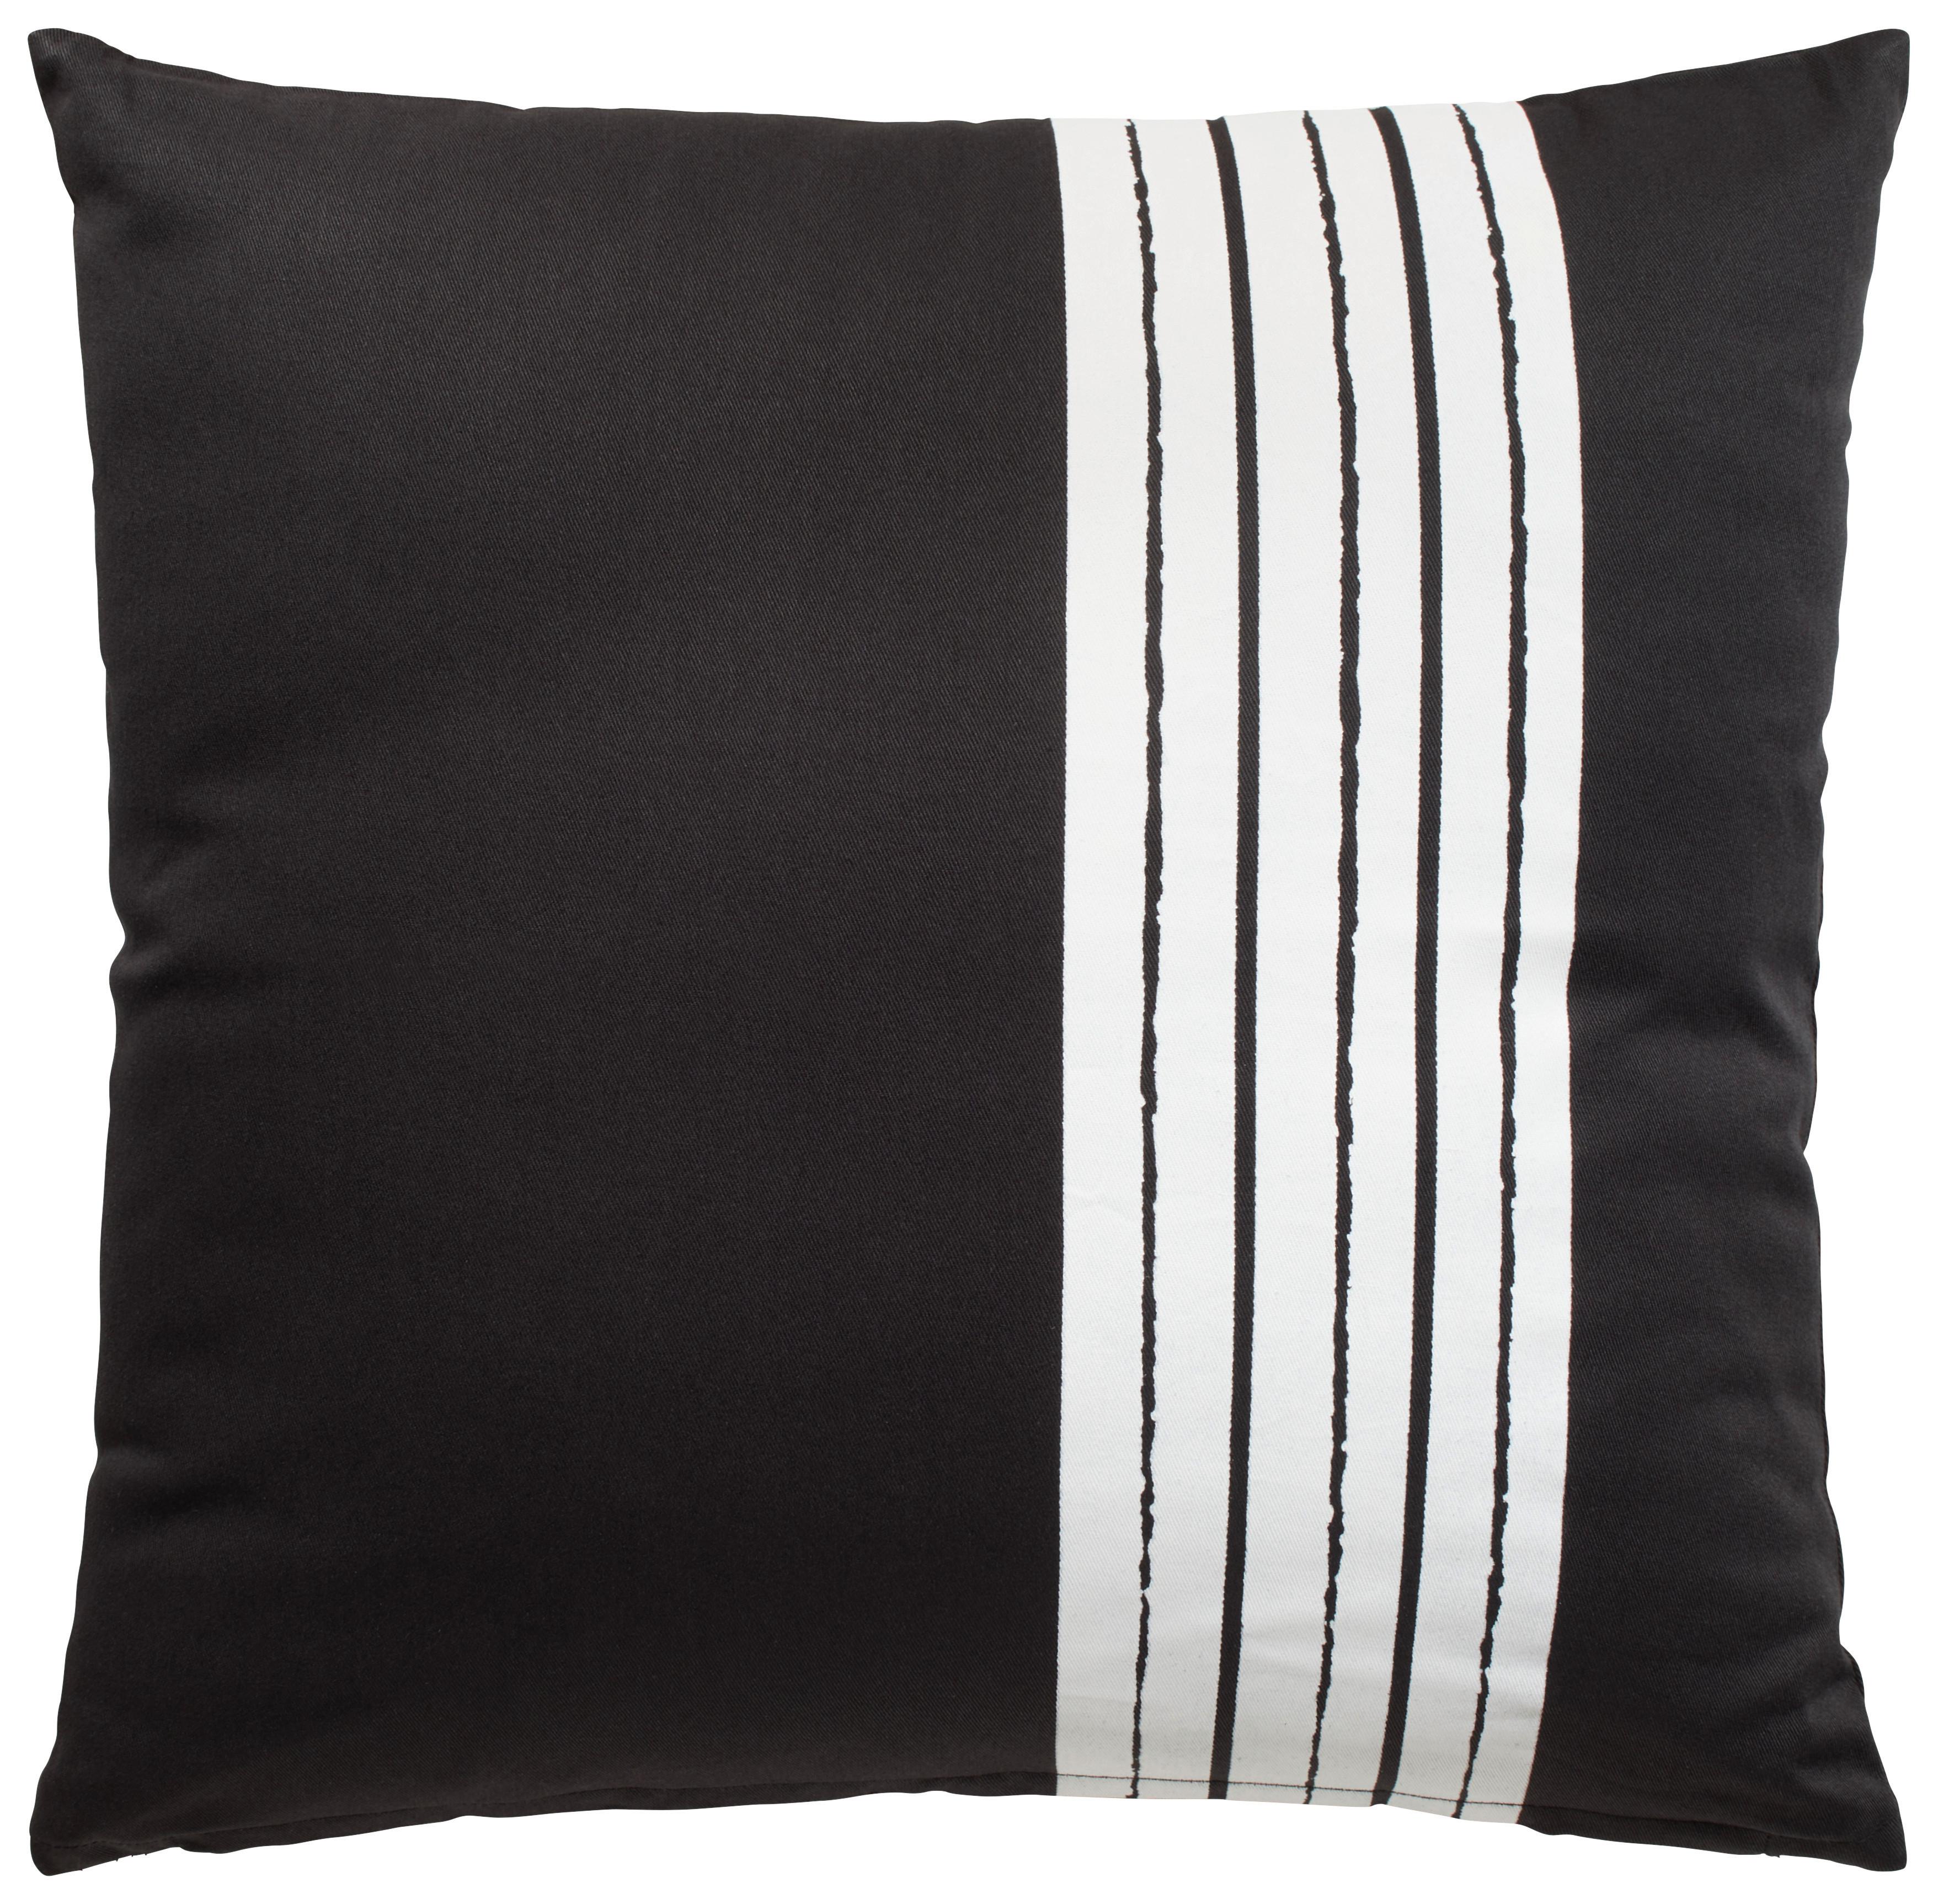 Dekorační Polštář Stripe, 45/45cm, Černá - černá, Moderní, textil (45/45cm) - Modern Living